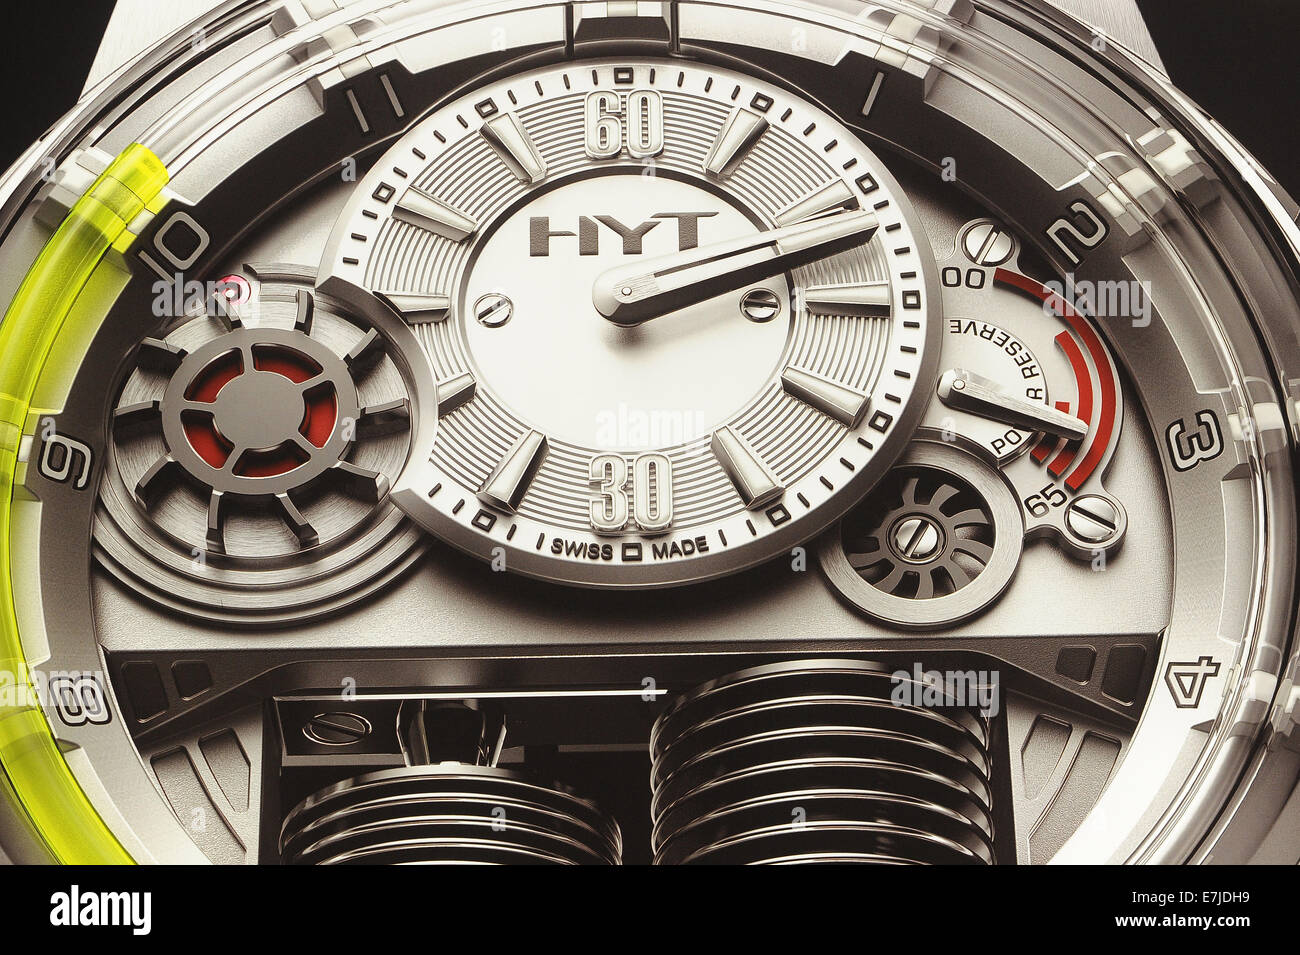 Uhren, Uhren, Uhr, Uhren, Luxus, schweizerisch, Mechanik, Luxus-Uhren, Hyt, Hydro Mechanik, Wasseruhr, Armbanduhr, Technolog Stockfoto